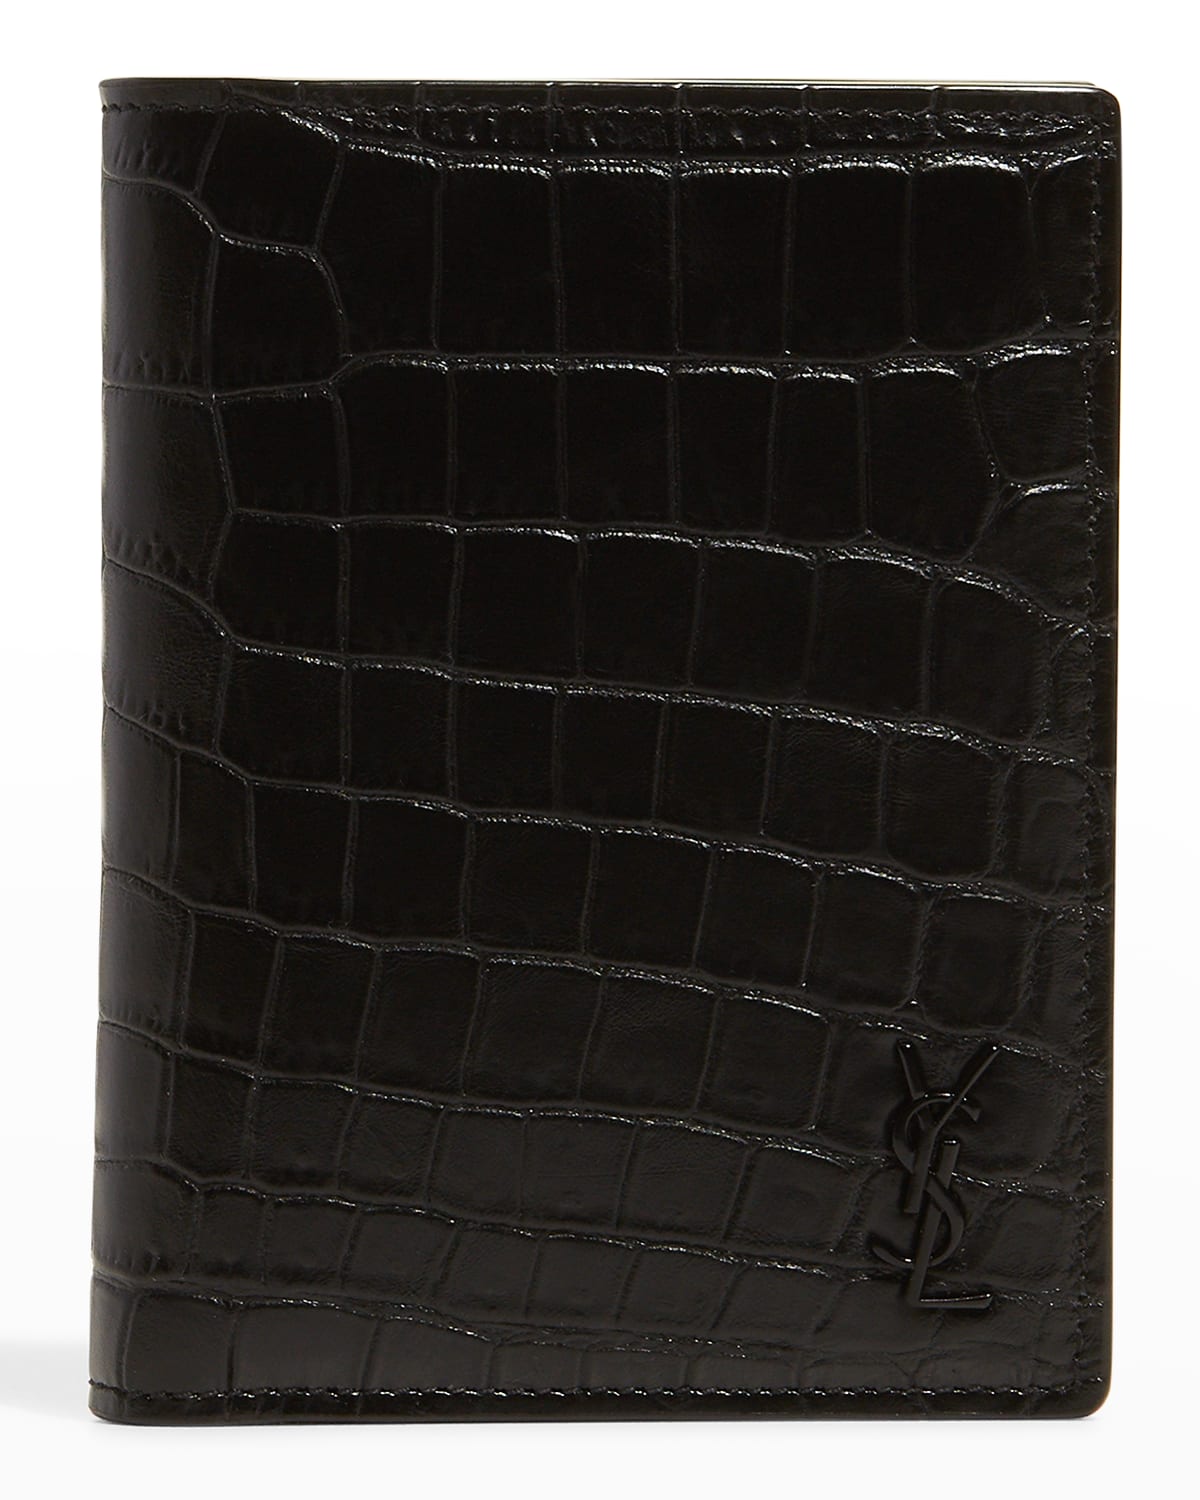 Crocodile Embossed Faux Leather Wallet 6 card slots id window black brown tan